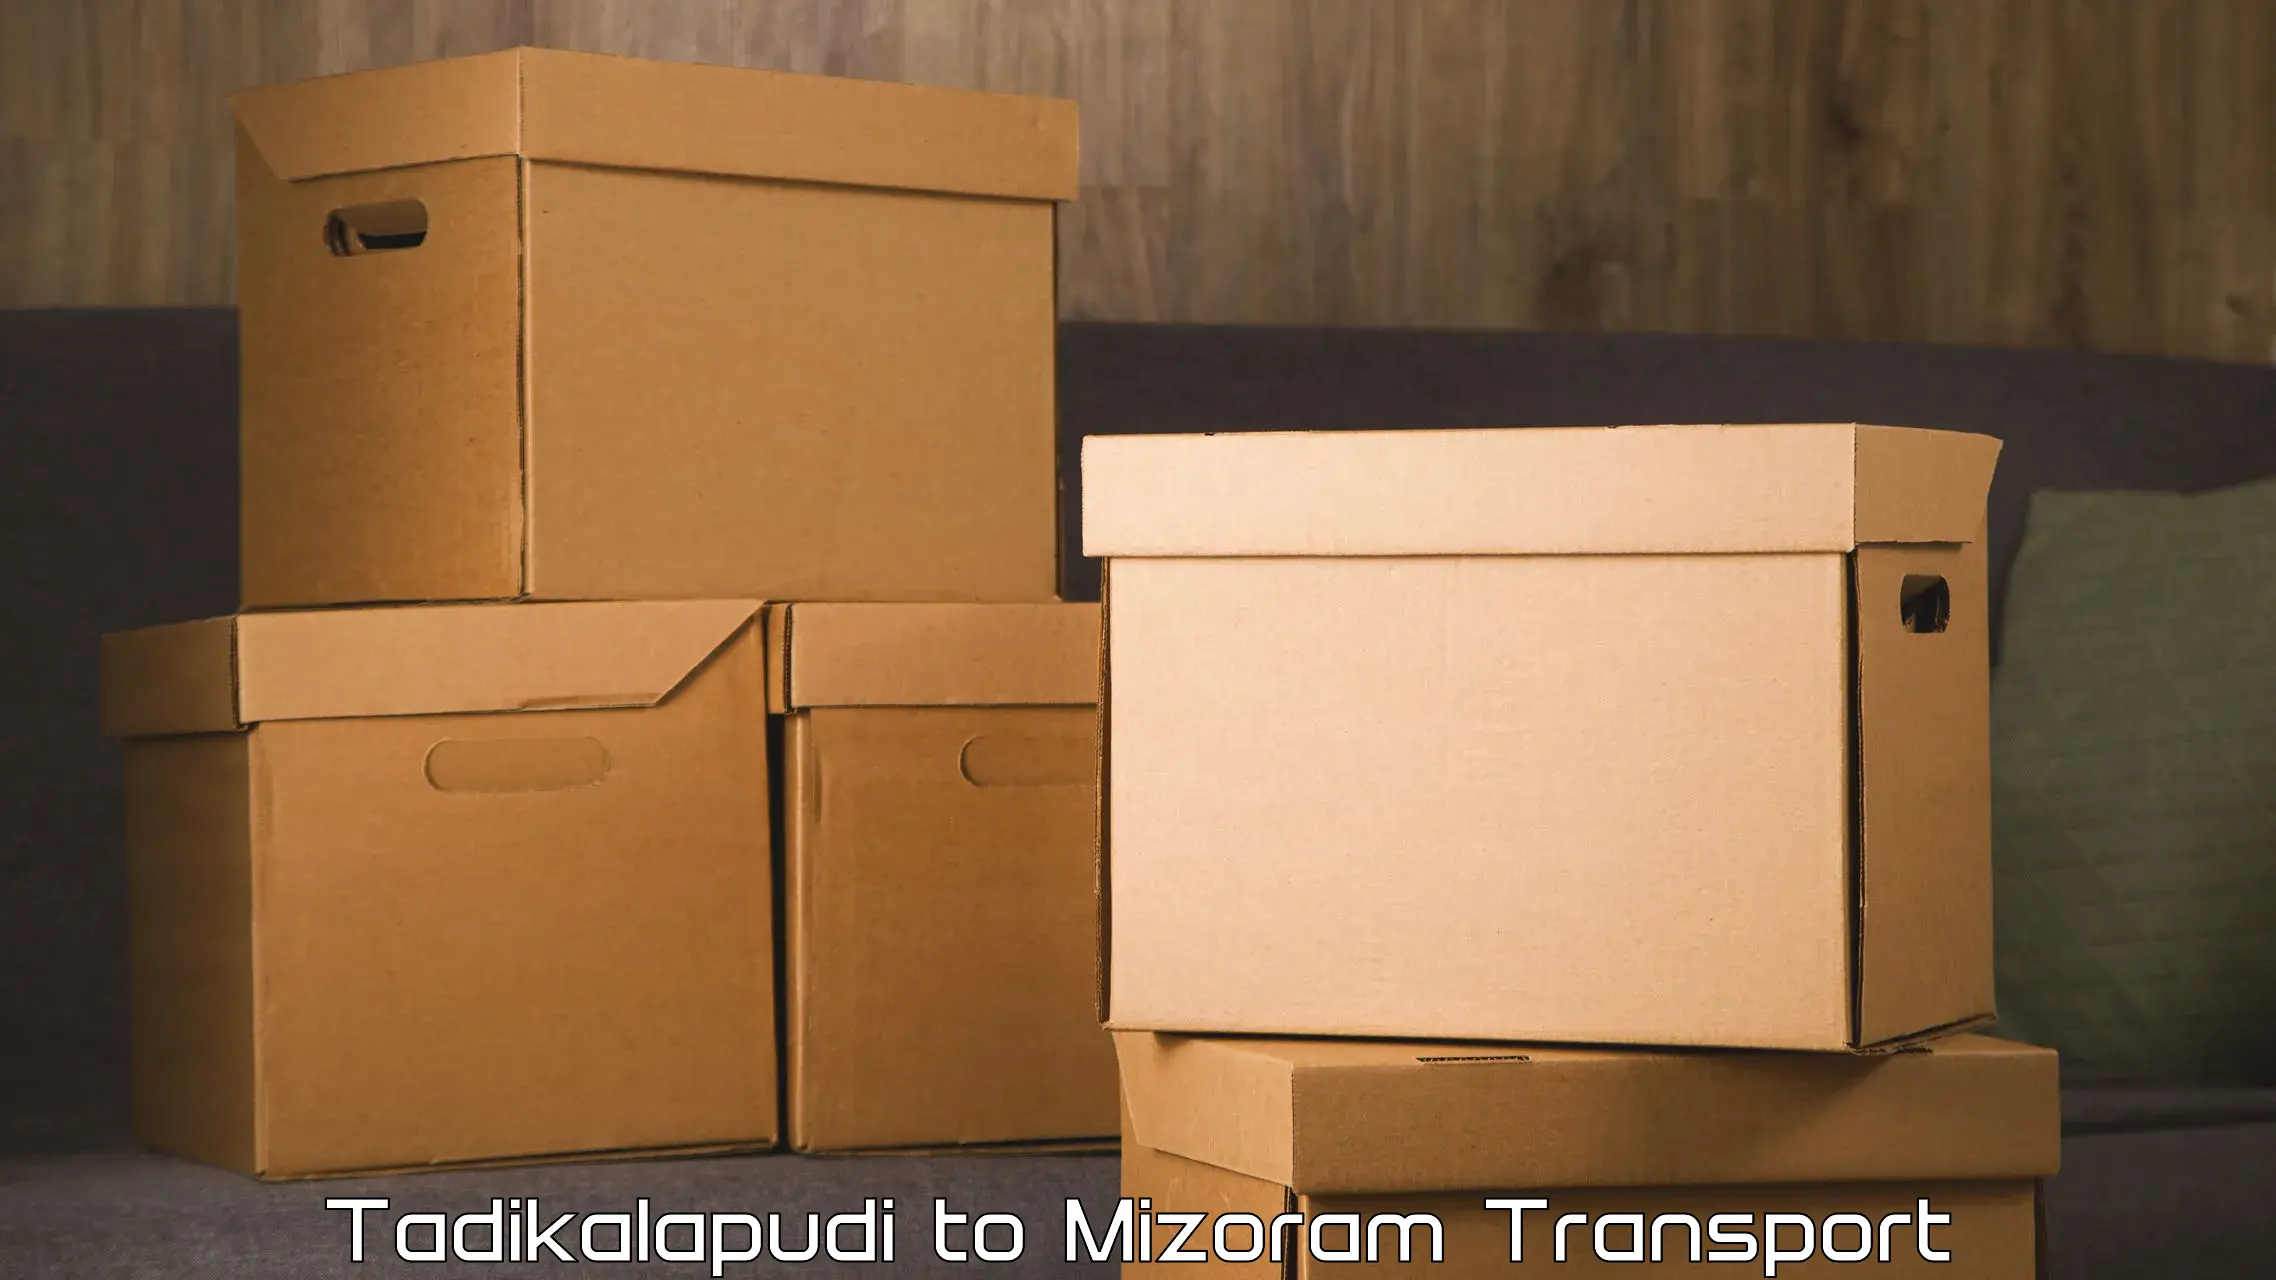 Pick up transport service in Tadikalapudi to Mizoram